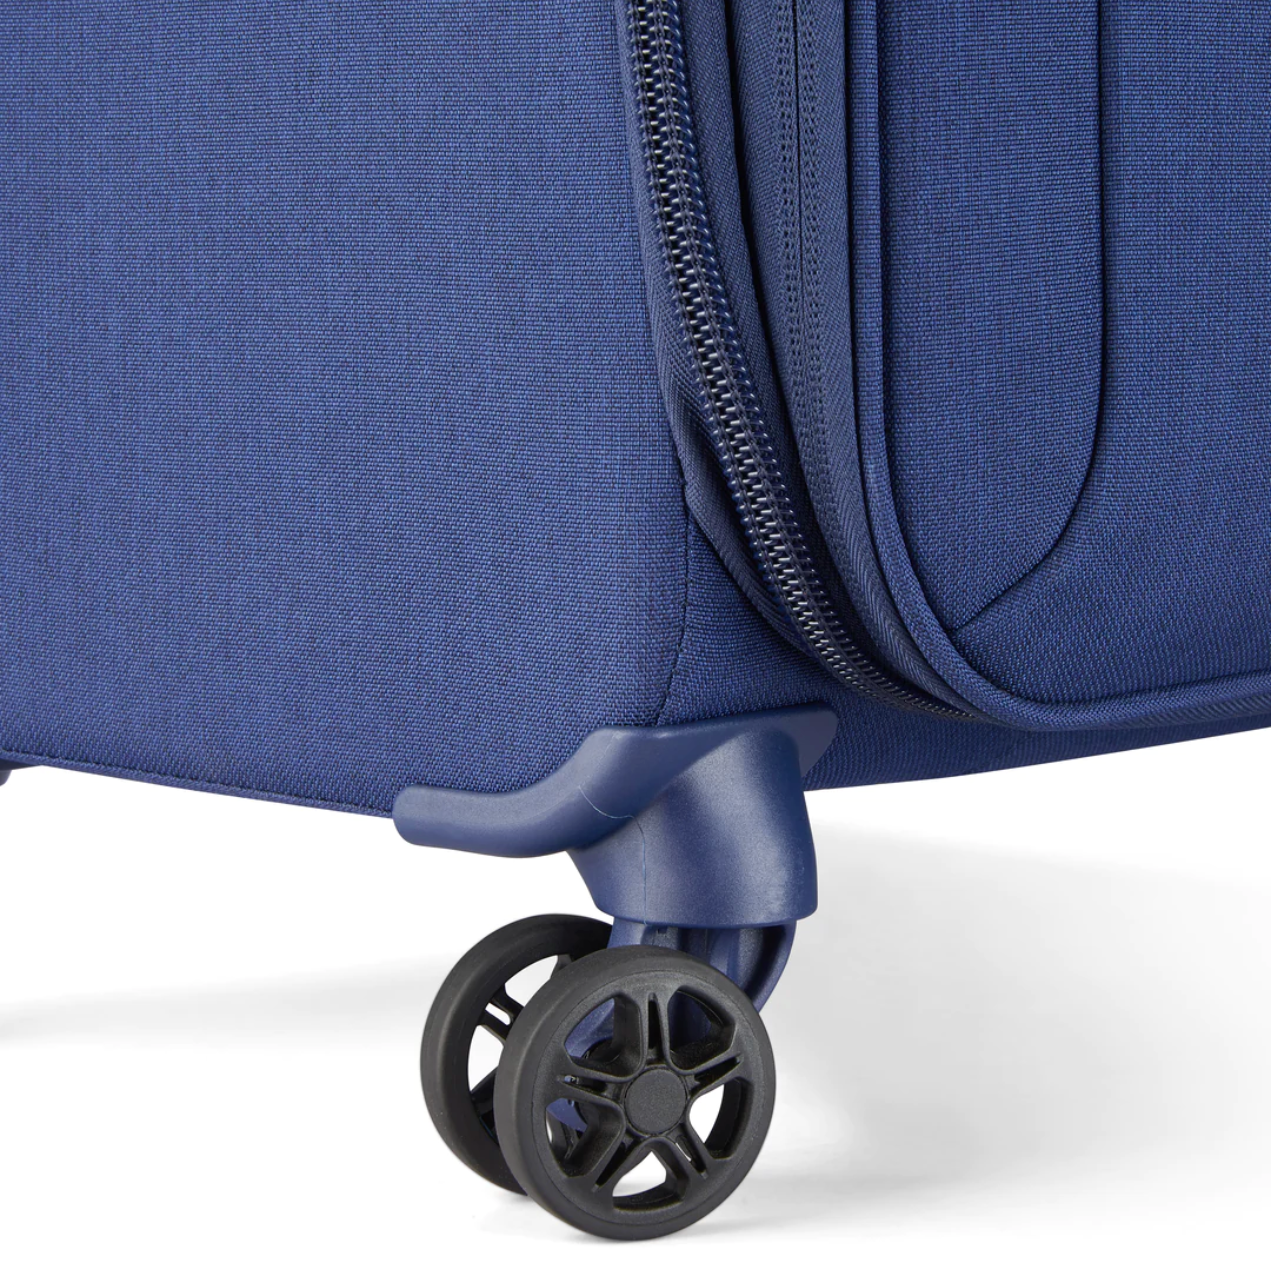 Valise Delsey Brochant 2.0 Taille Medium 67 cm extensible bleu vue des roues